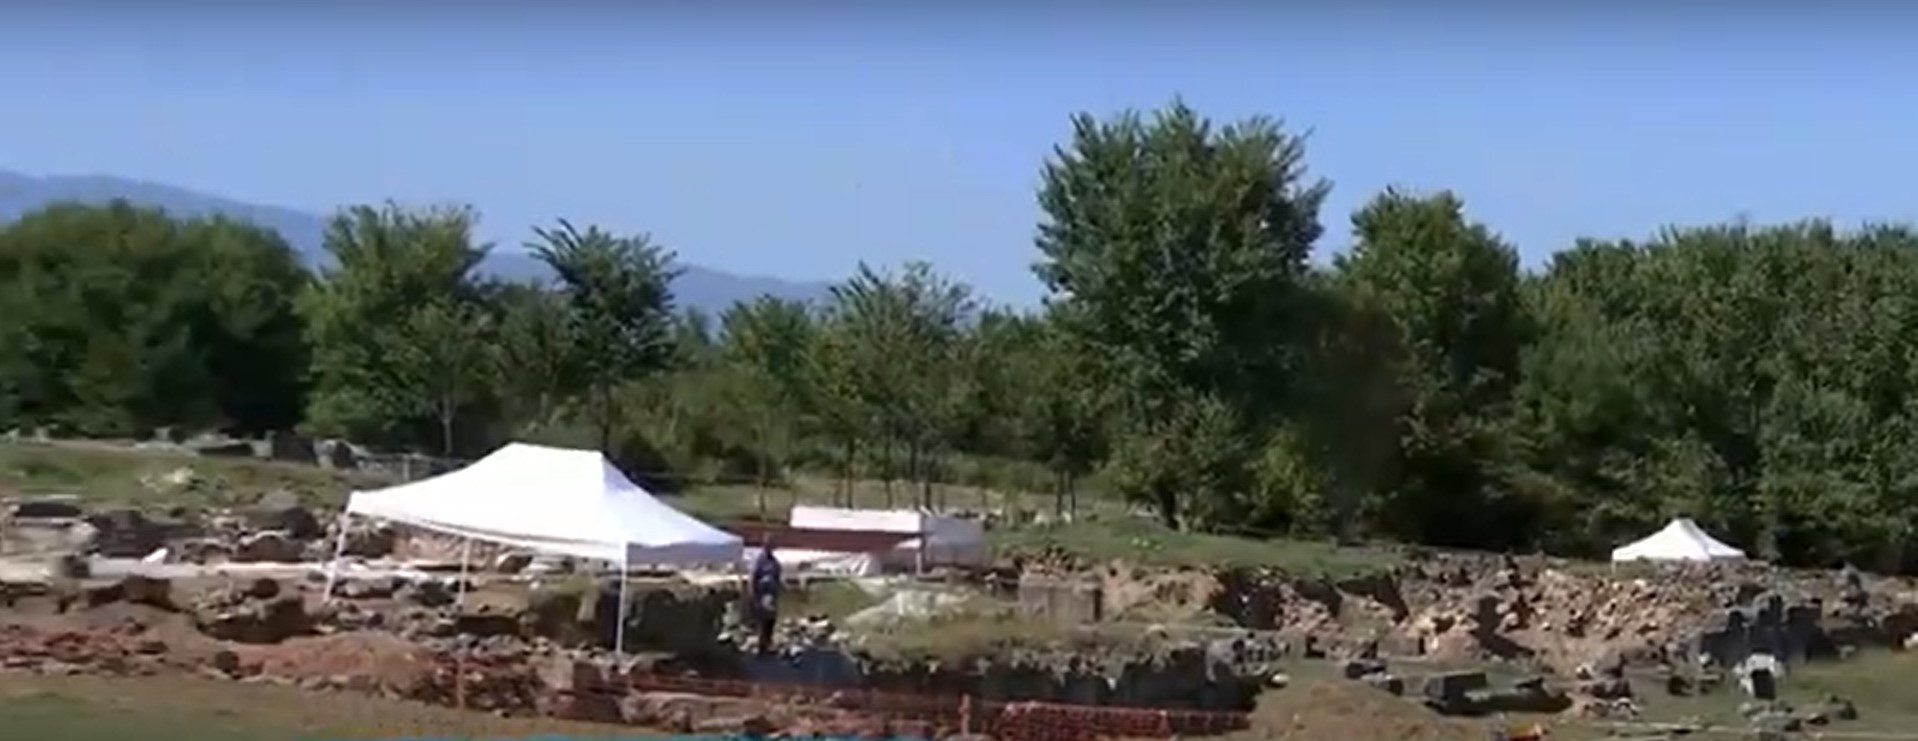 Αρχαιολογικό συνέδριο για τις ανασκαφές σε Μακεδονία και Θράκη το 2022